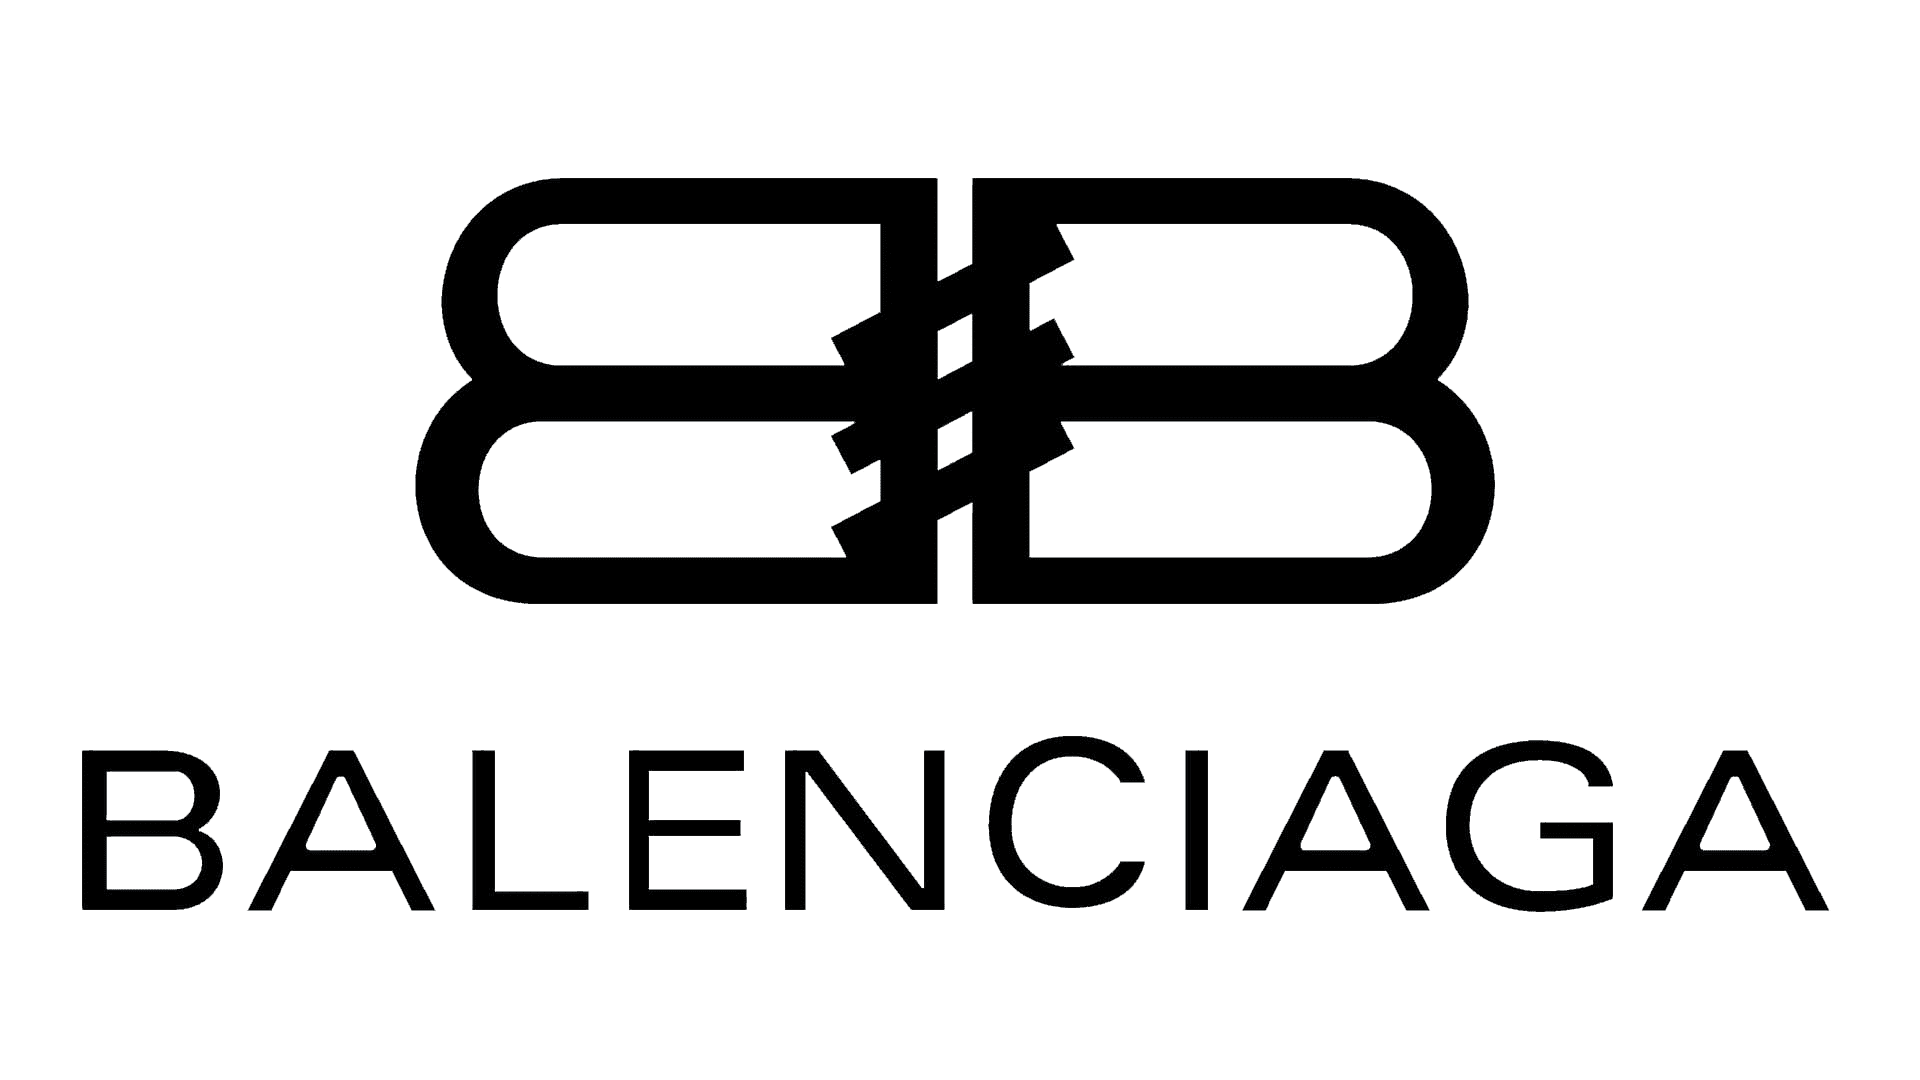 Balenciaga Logo PNG Transparent Images - PNG All